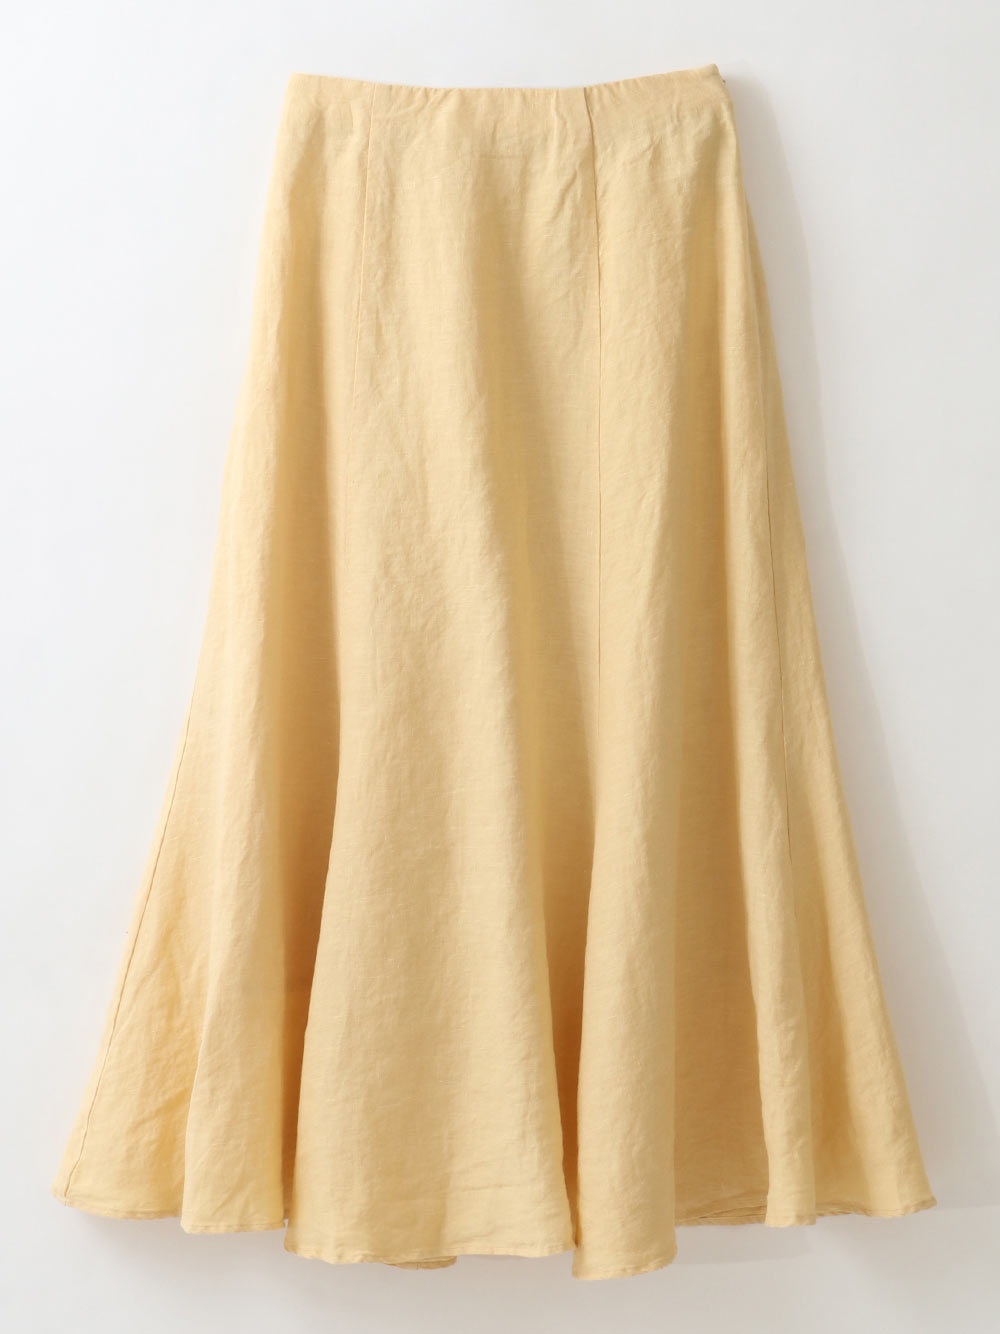 French Linen Skirt(51イエロー-フリー)